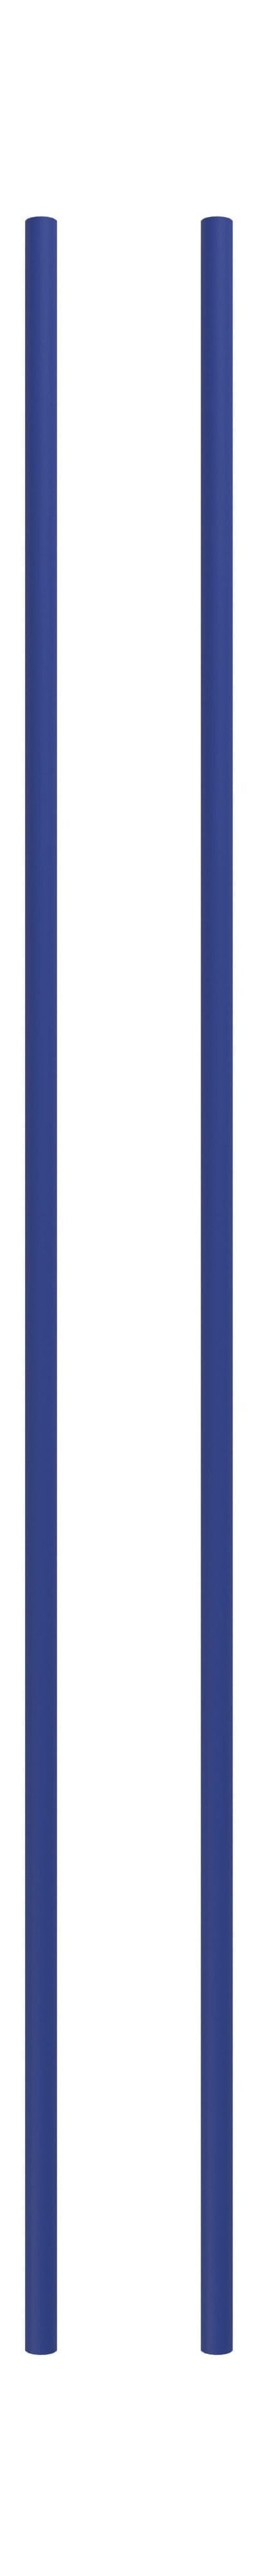 Système d'étagère MOEBE / étagère murale Leg 115 cm Bleu profond, ensemble de 2